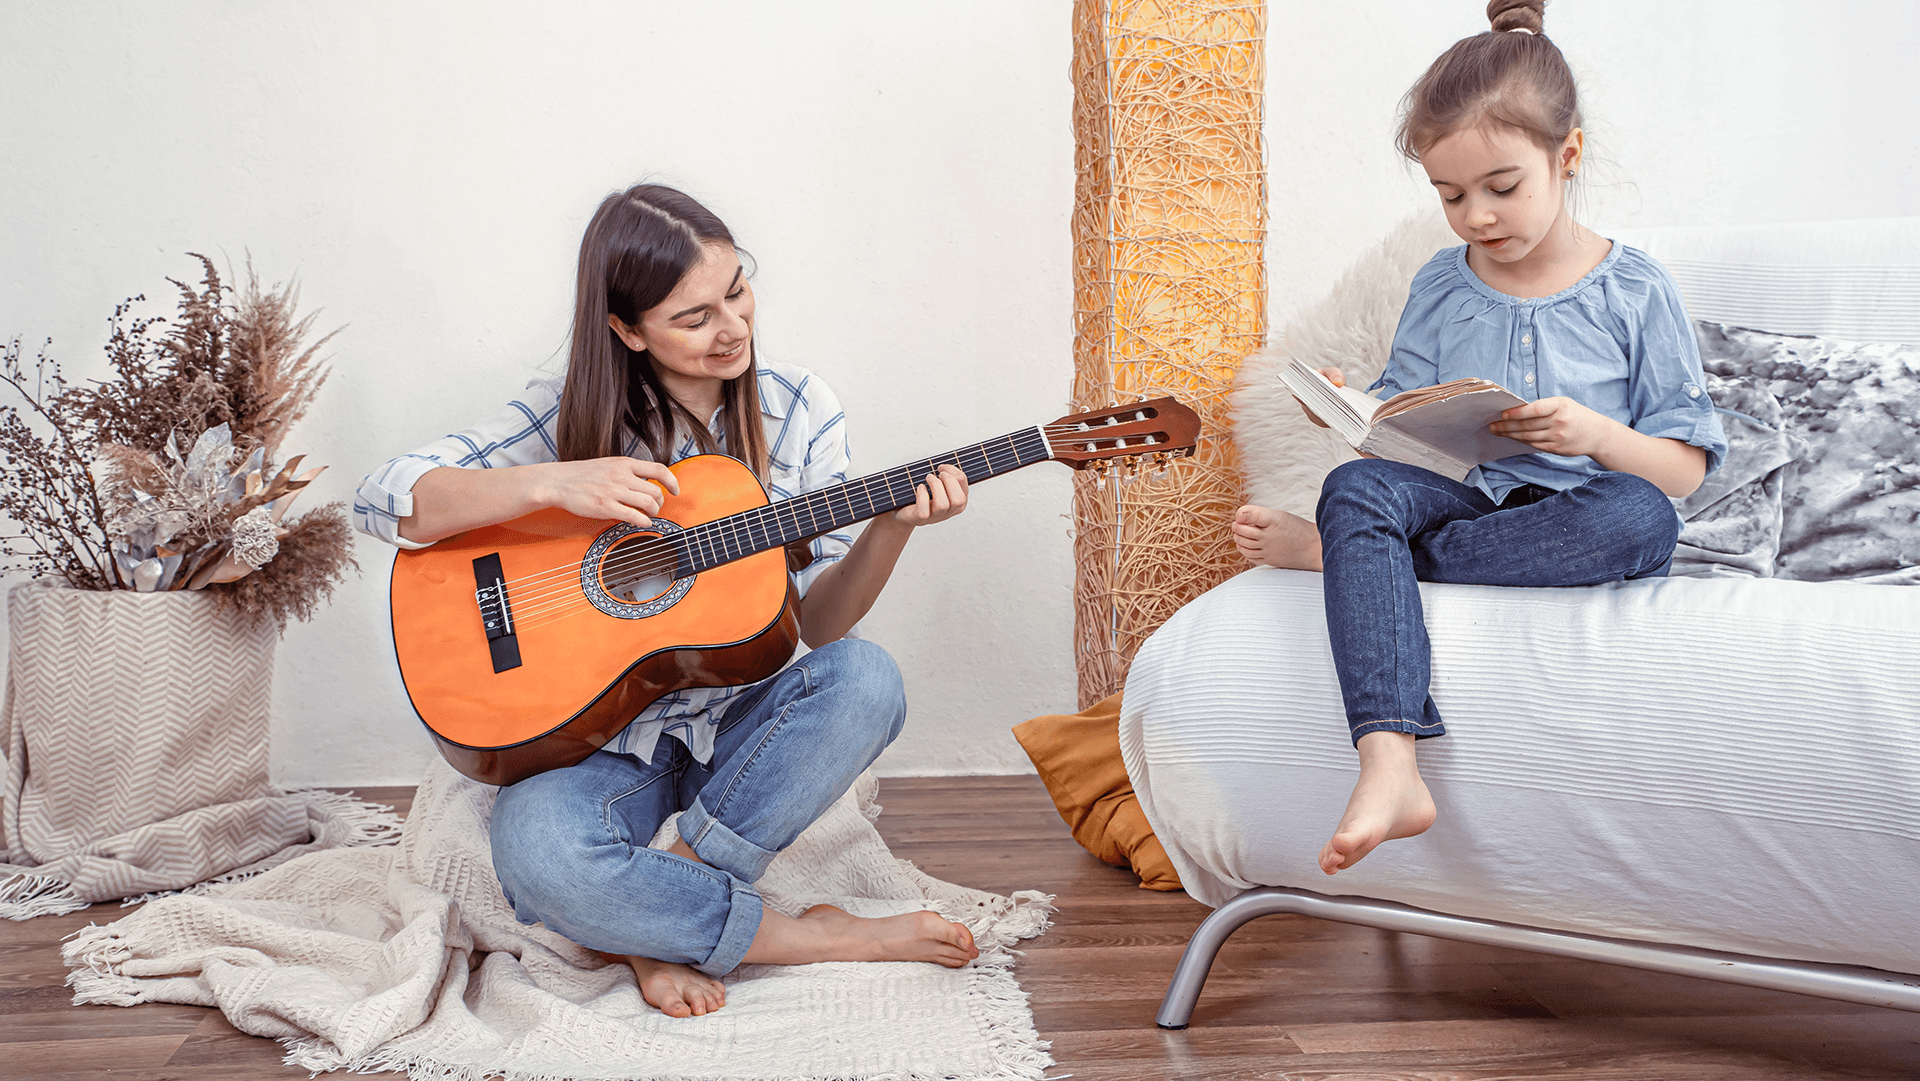 Dziewczynka siedząca na podłodze z gitarą, grająca swojej młodszej siostrze, siedzącej obok na białej kanapie